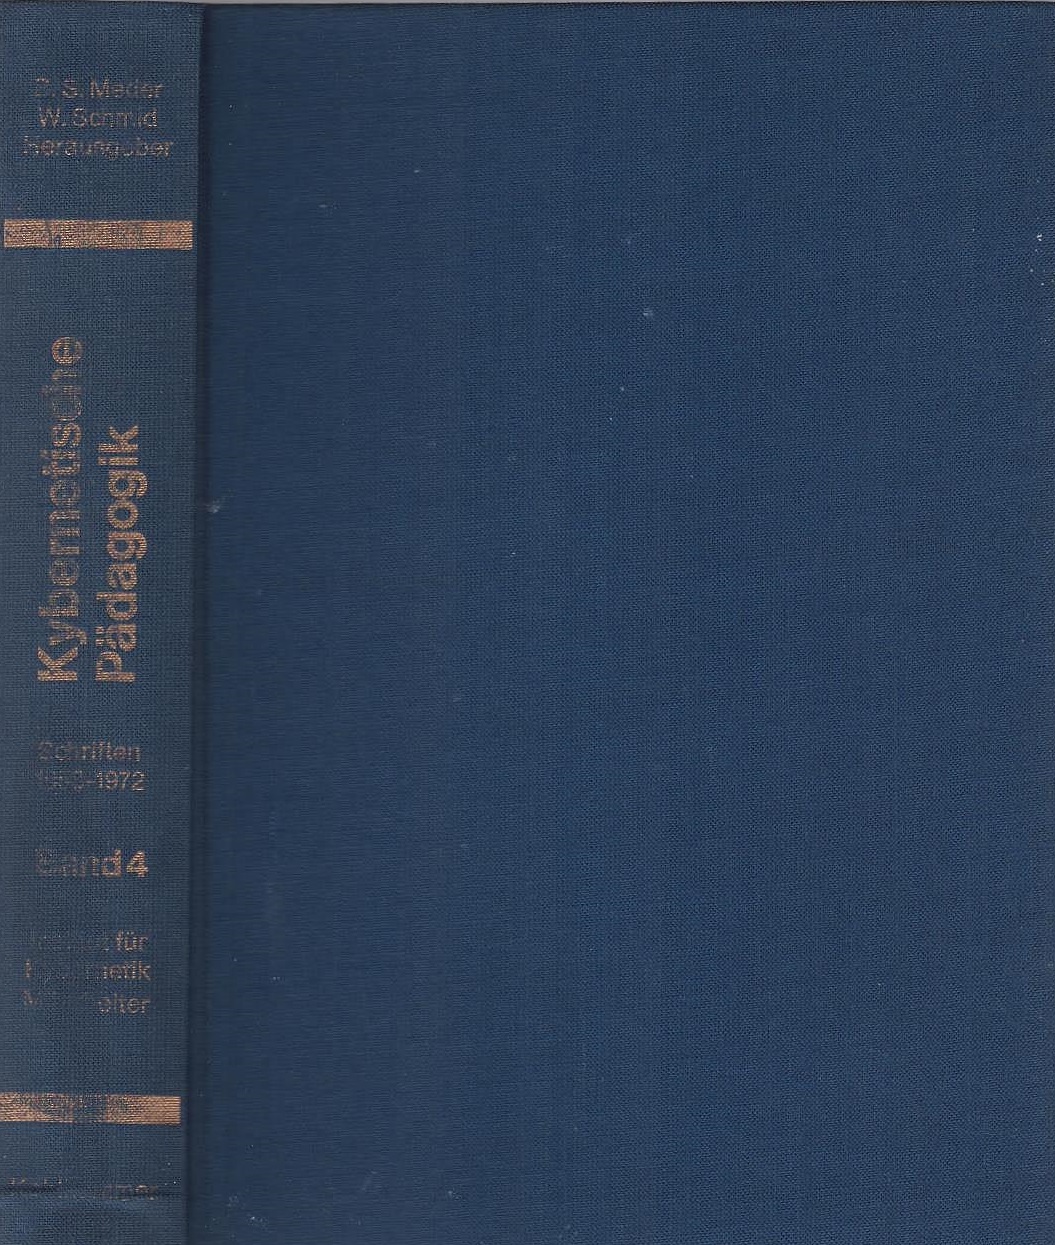 Kybernetische Pädagogik; Teil: Bd. 4., Schriften 1958 - 1972 - Helmar, Frank